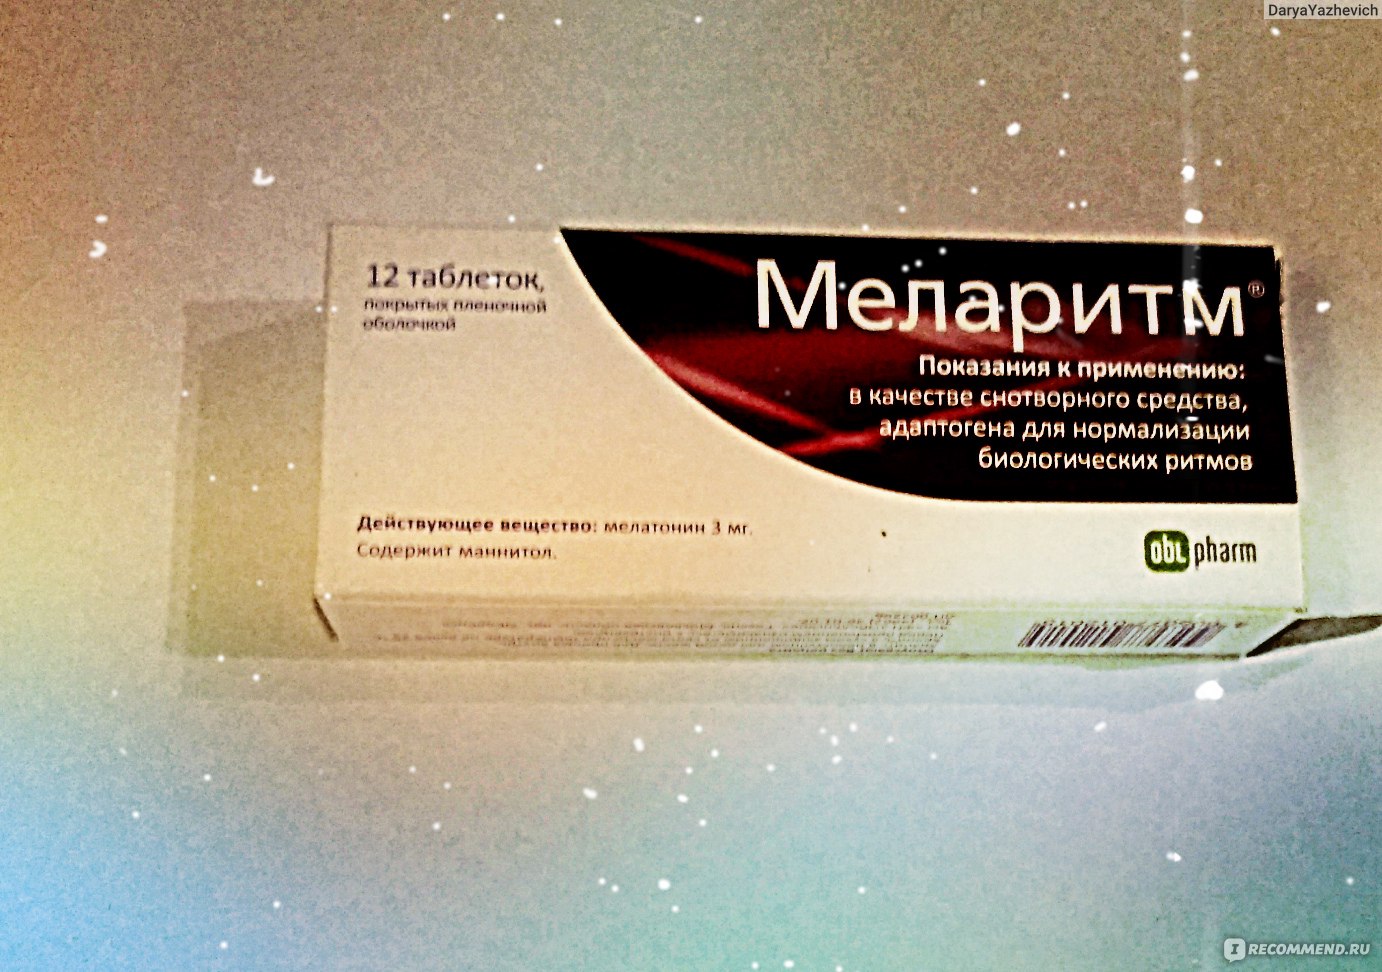 Таблетки для сна мелатонин: инструкция по применению, цена в аптеке, отзывы, польза и вред